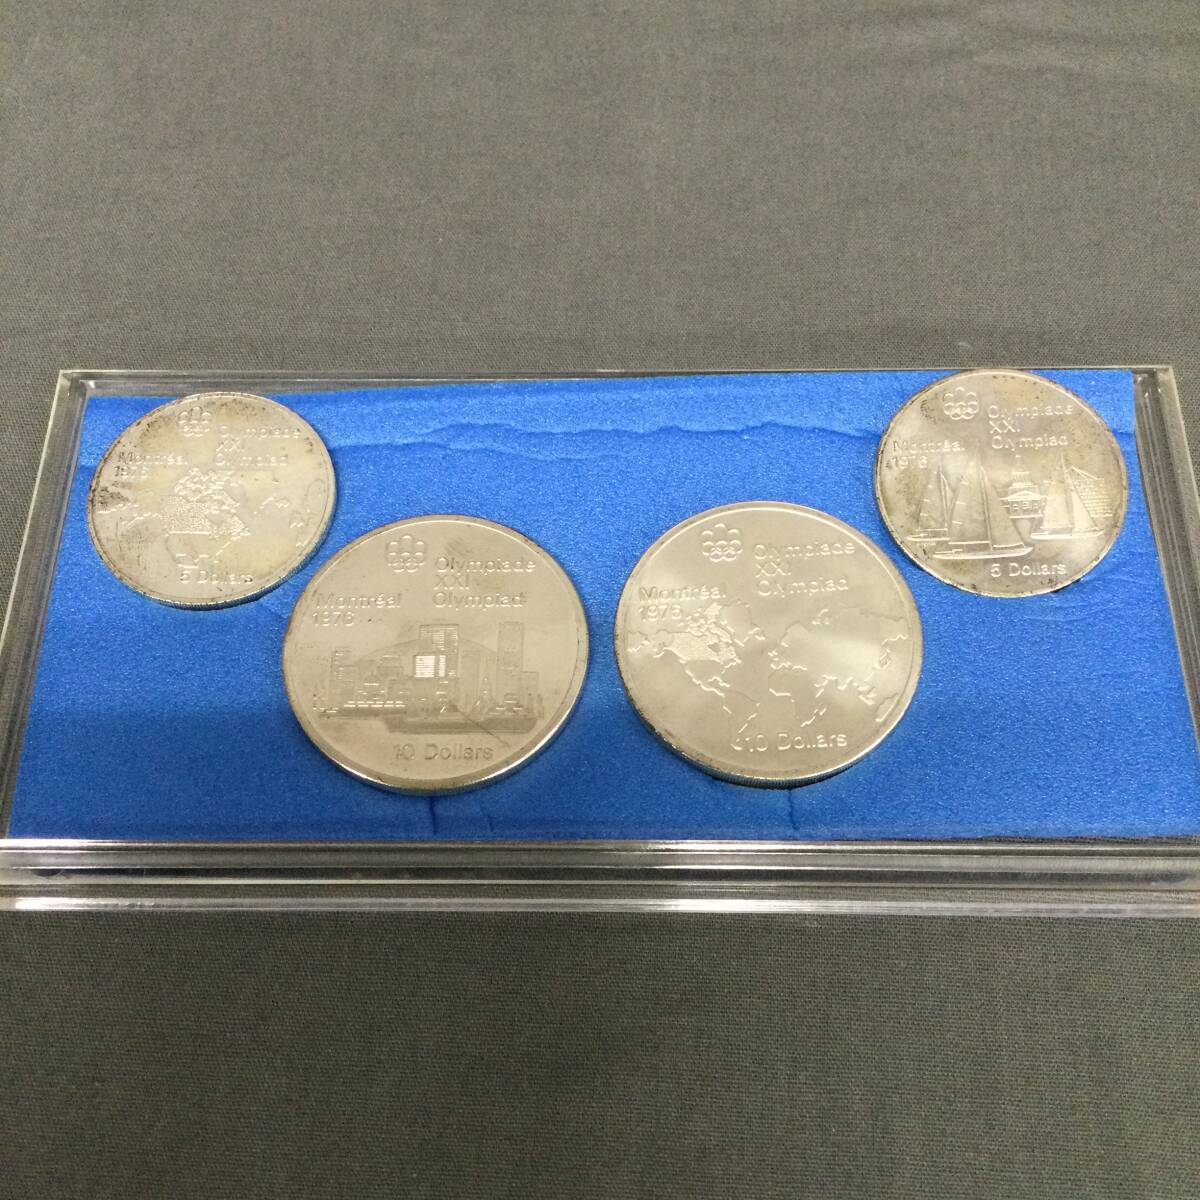 060327 257166 第21回オリンピック モントリオール大会 記念銀貨 記念コイン 日本スポーツメタル協会 コレクション の画像5